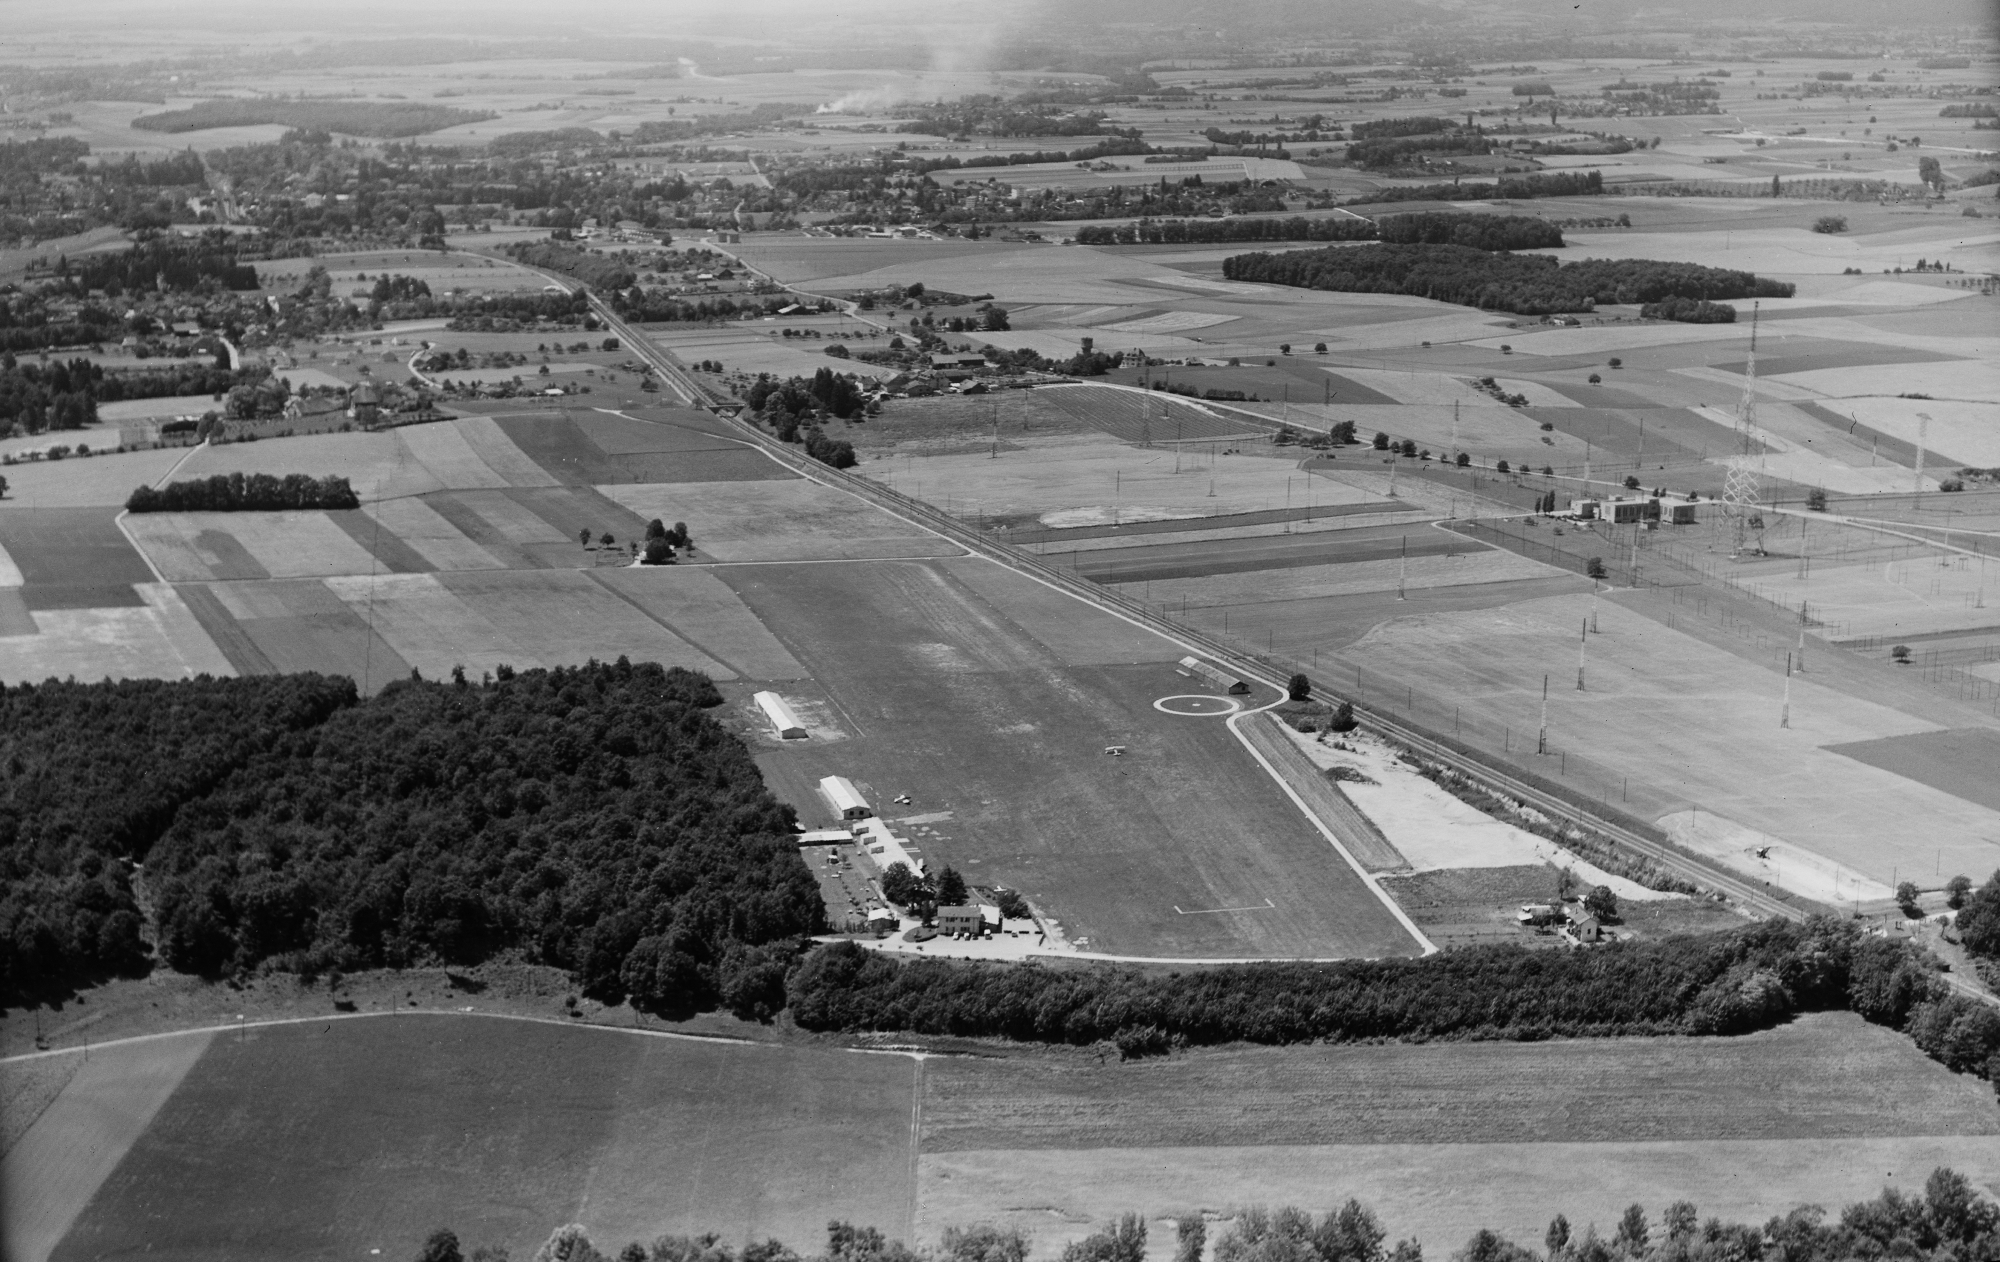 Le 23 décembre 1948, la Confédération donnait son feu vert pour la mise en service de l'aérodrome de Prangins. Il fut inauguré officiellement le 24 juin 1950.